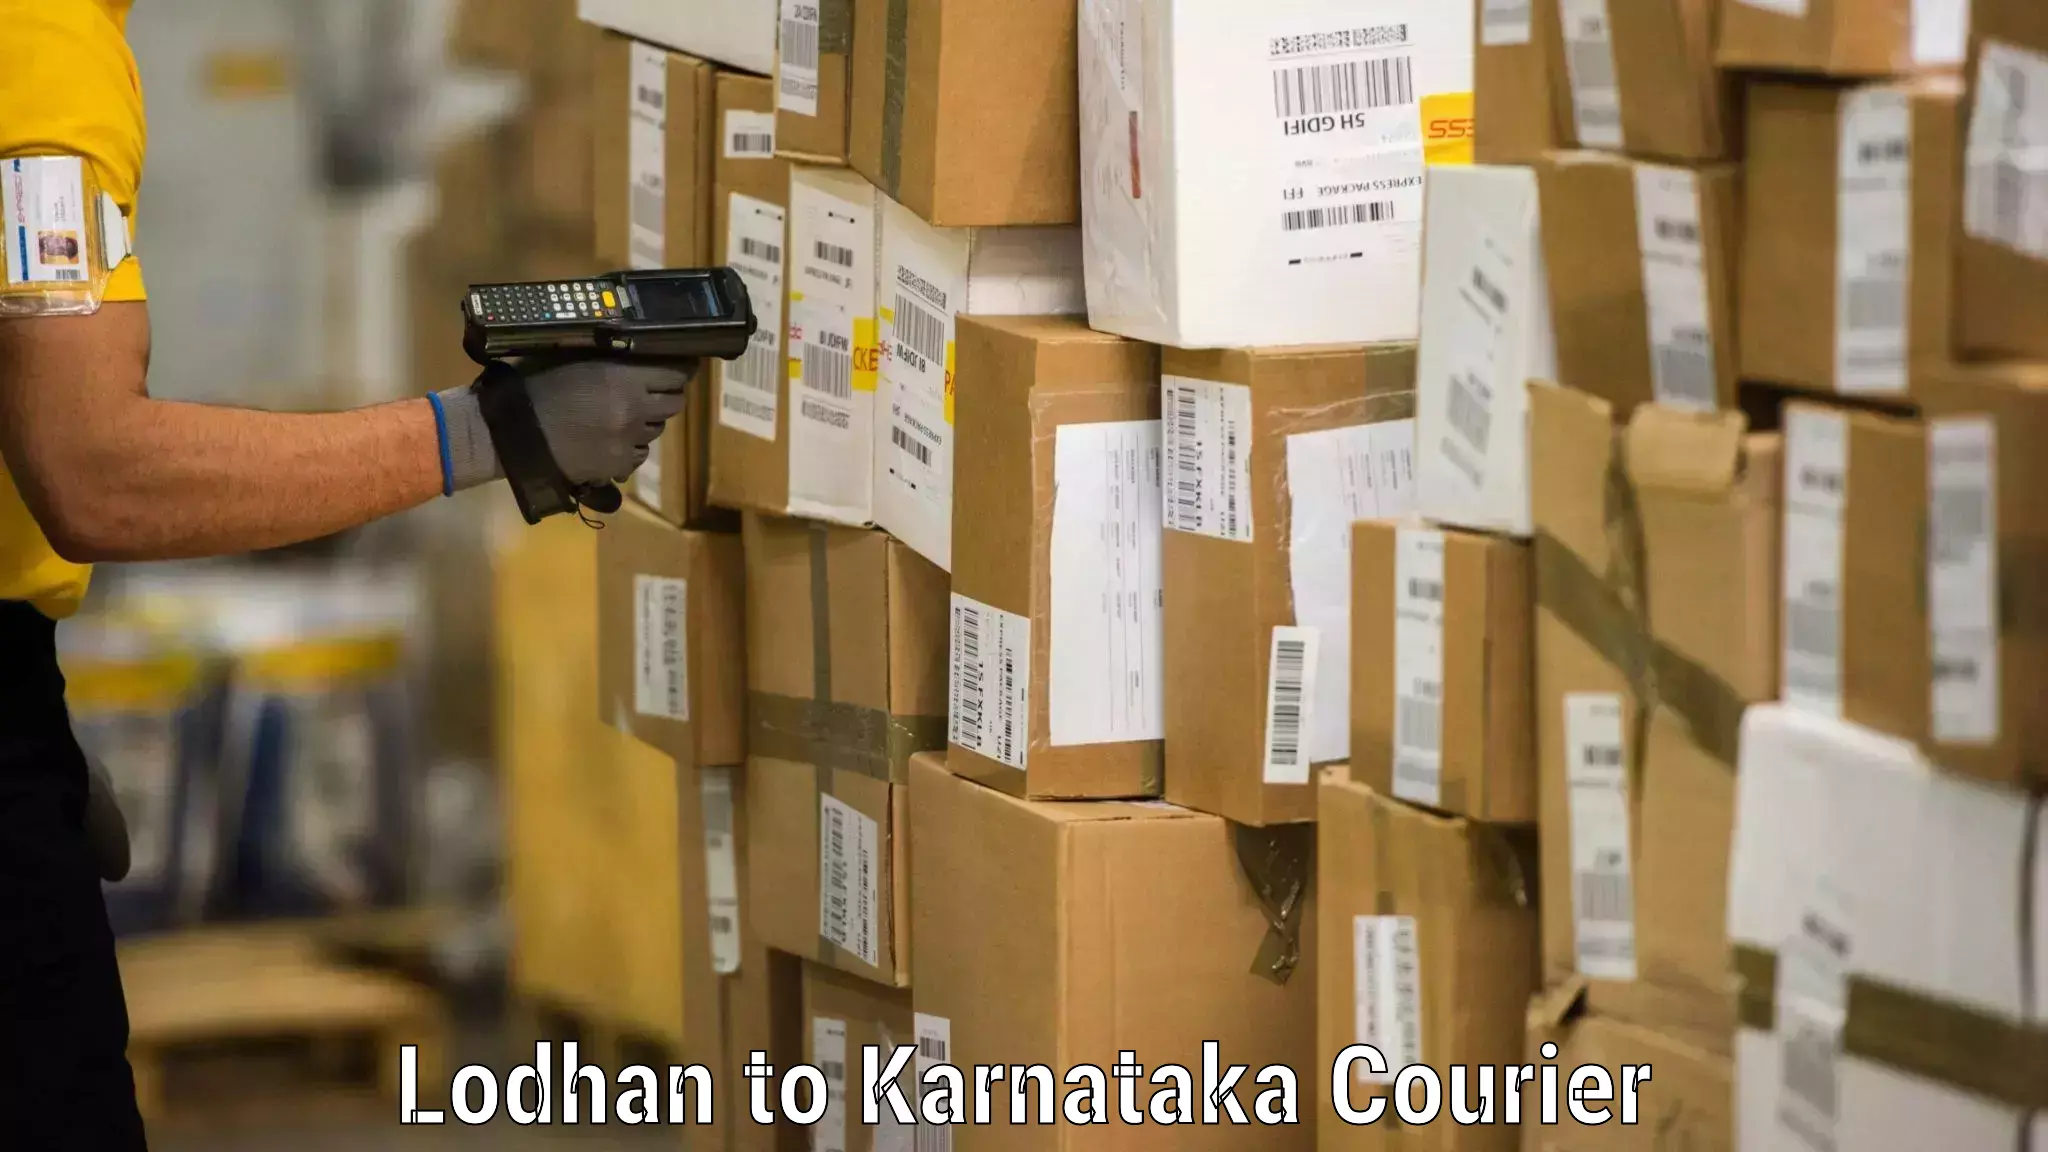 Affordable household movers Lodhan to Karnataka